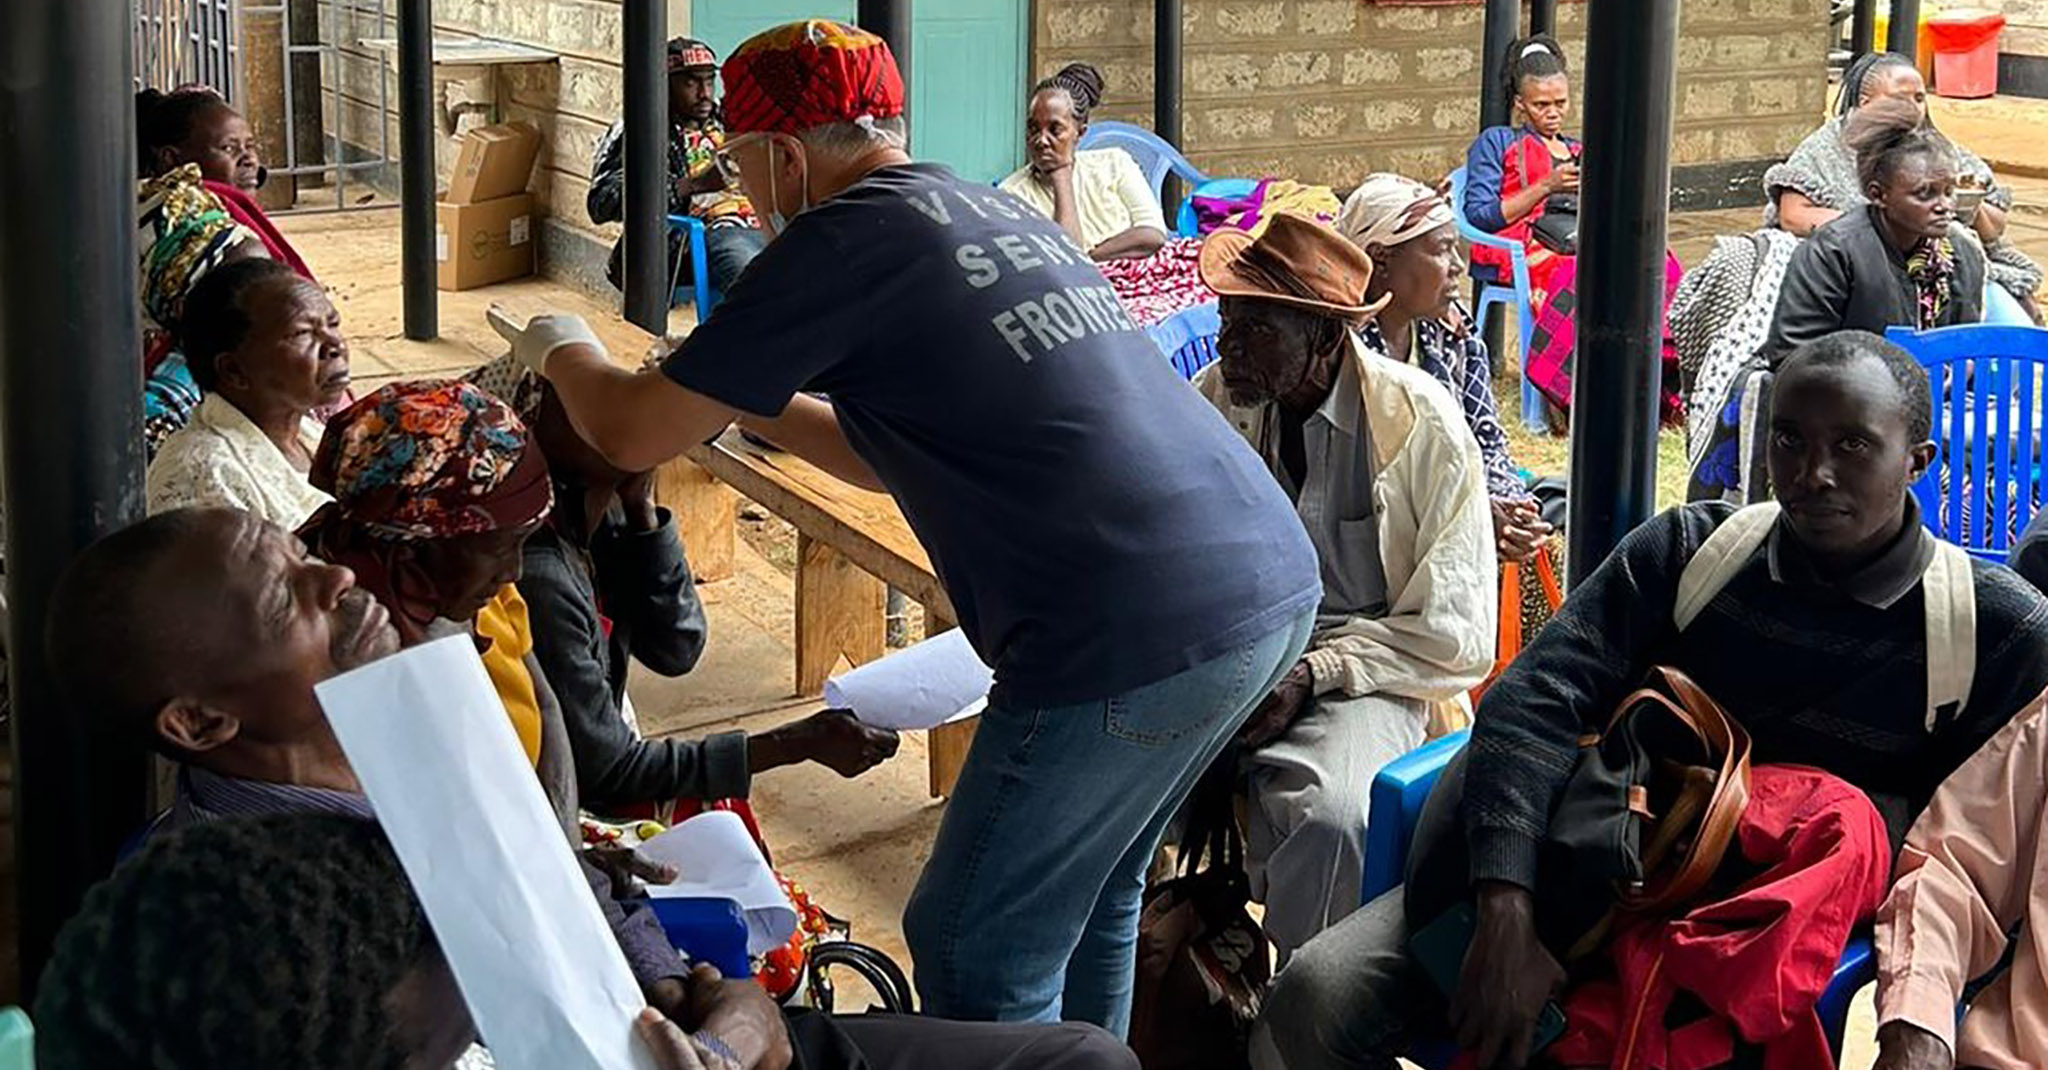 Jornada de cirujías en Kenia de la ONG de Calp Visió sense fronteres en su última campaña de prevención contra la ceguera